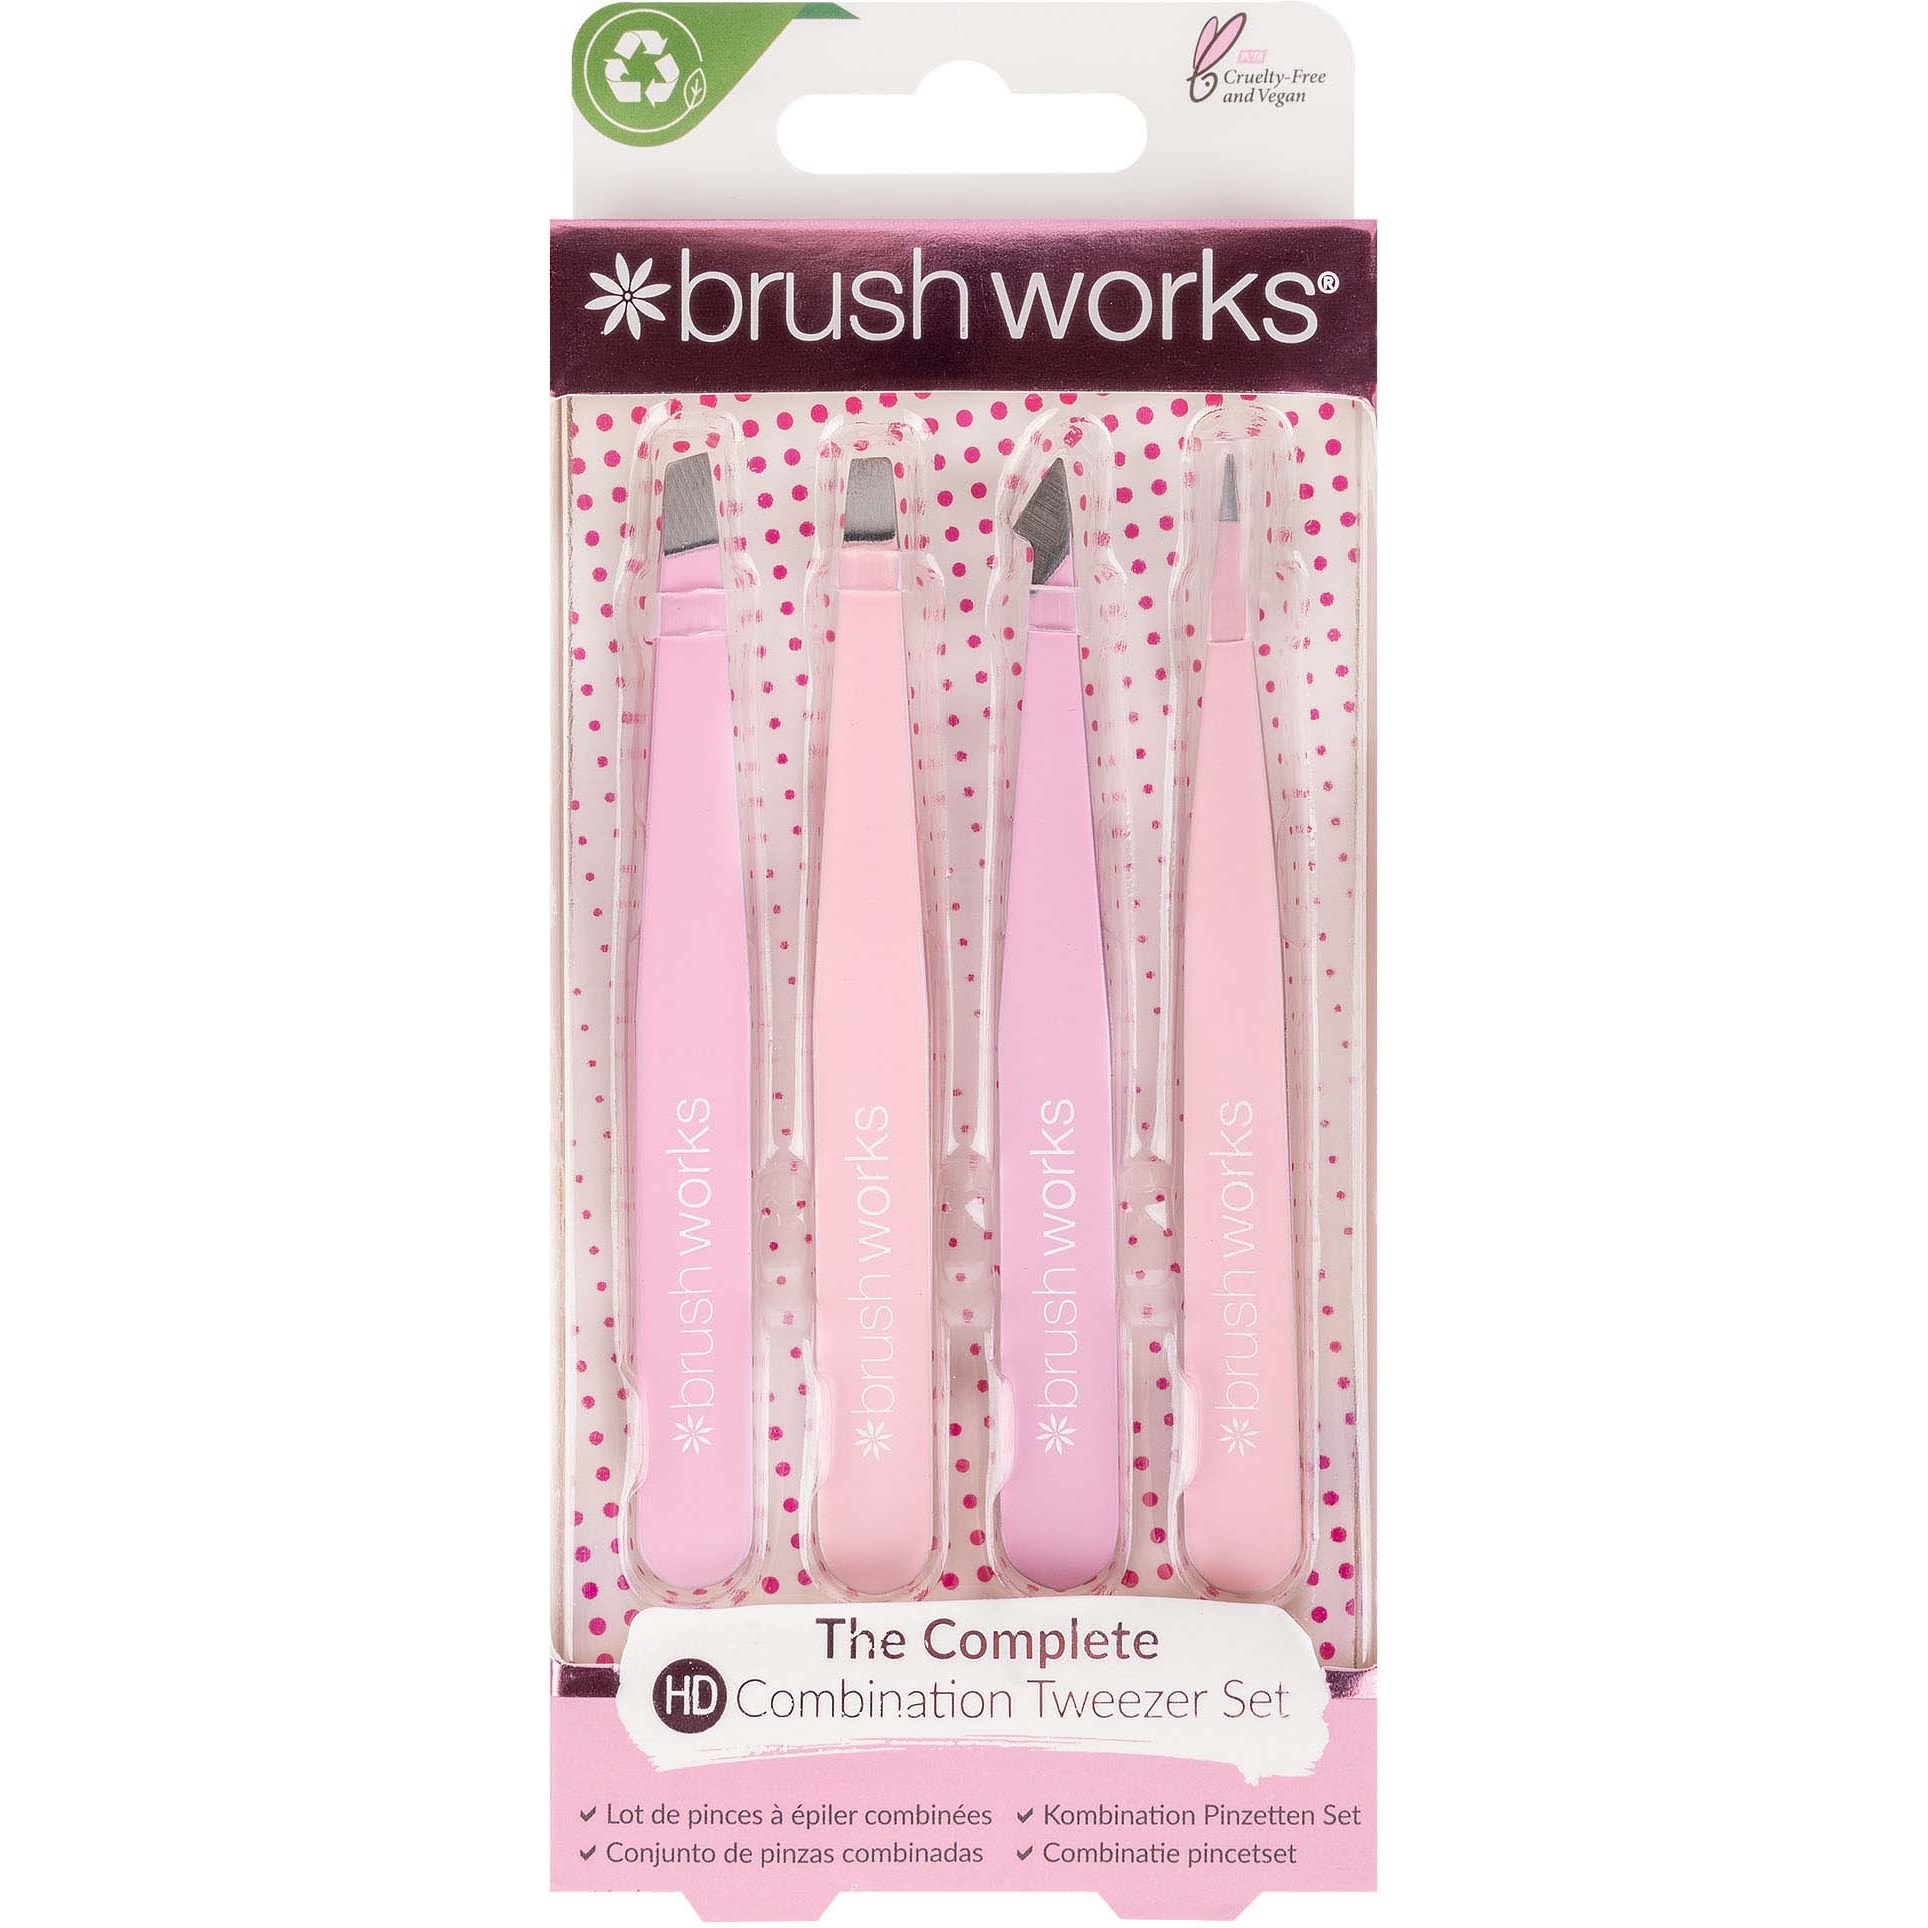 Brushworks HD 4 Piece Combination Tweezer Set – Pink